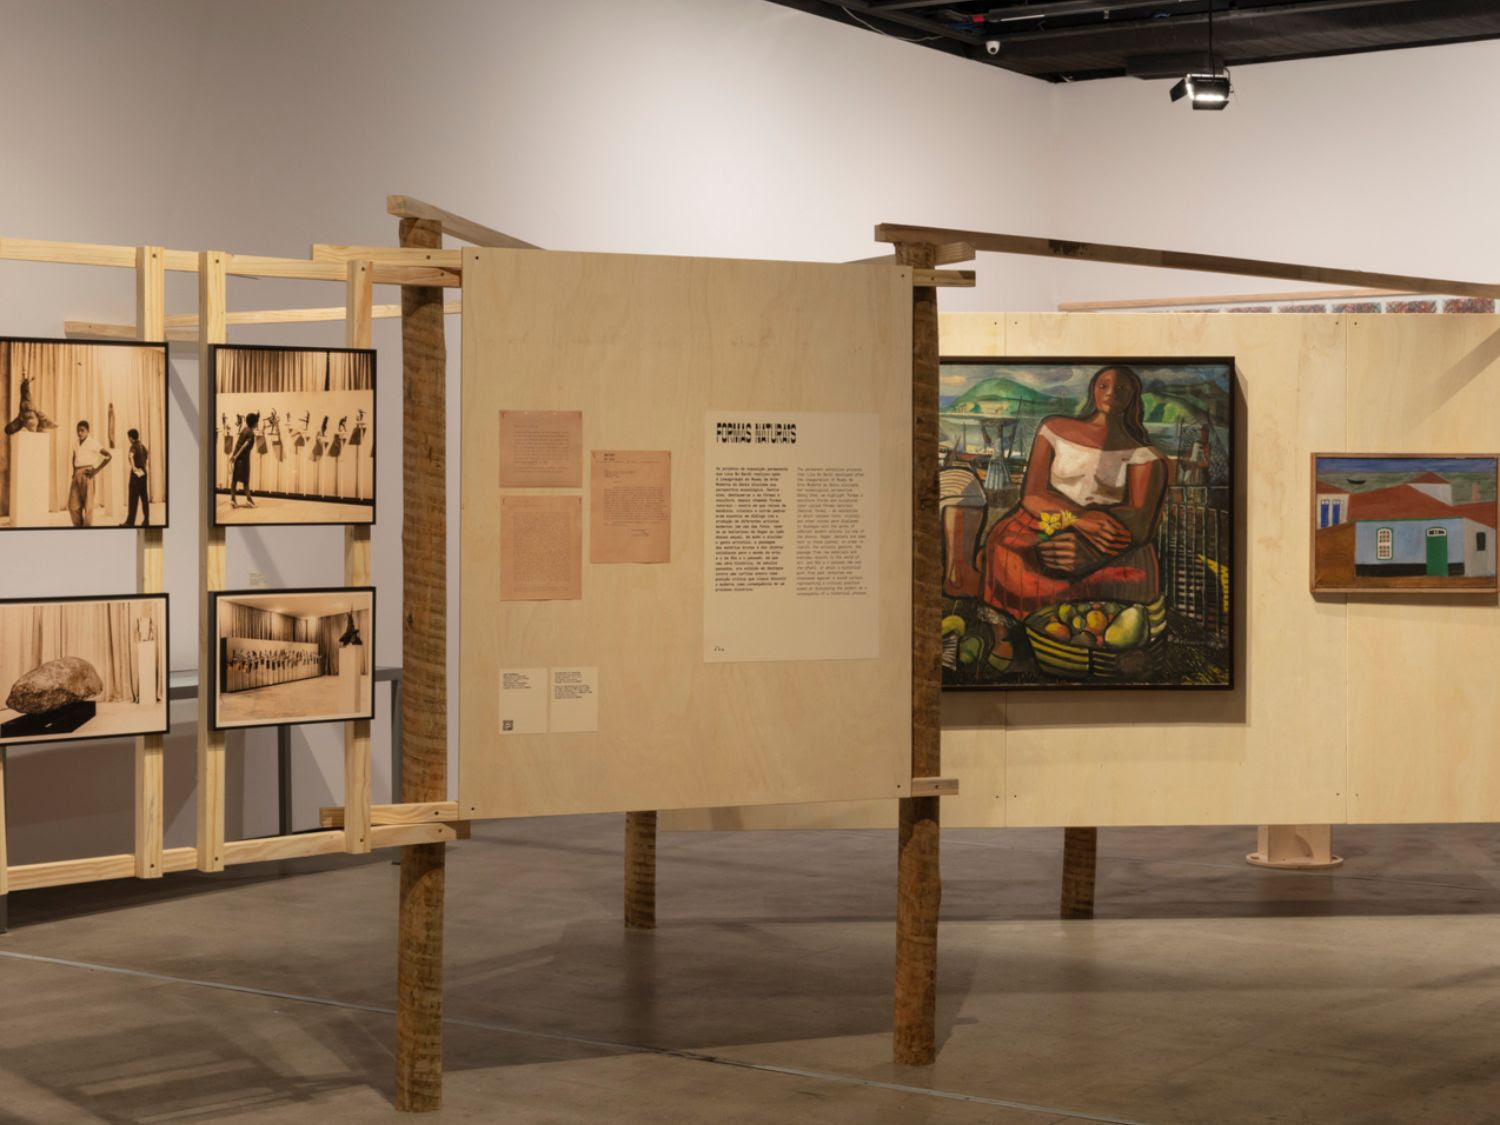 foto da exposição ensaios sobre o museu das origens. cavaletes de madeiras sustentam fotos, textos e dois quadros coloridos